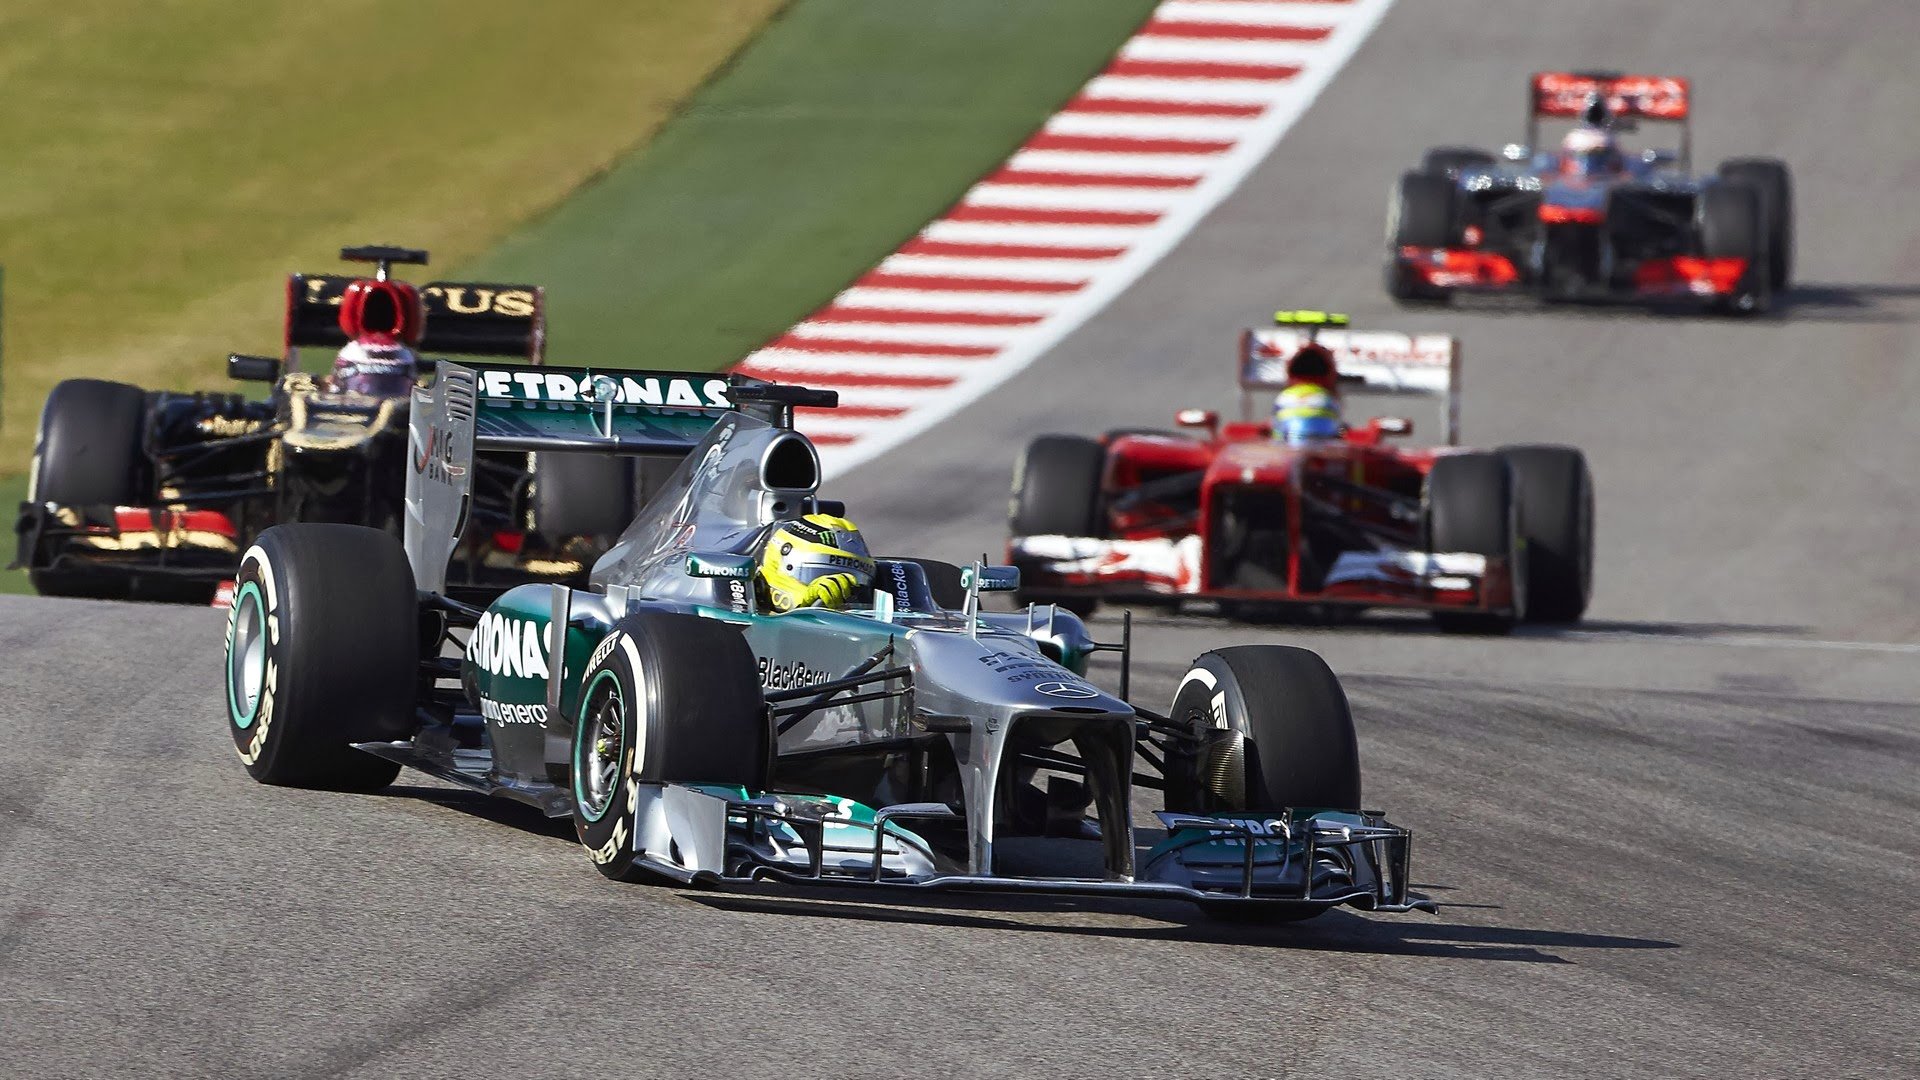 Первый старт формулы 1. F1 Motorsport. Гонки Formula 1. Формула 1 Мотоспорт. F1 2013 USA start.